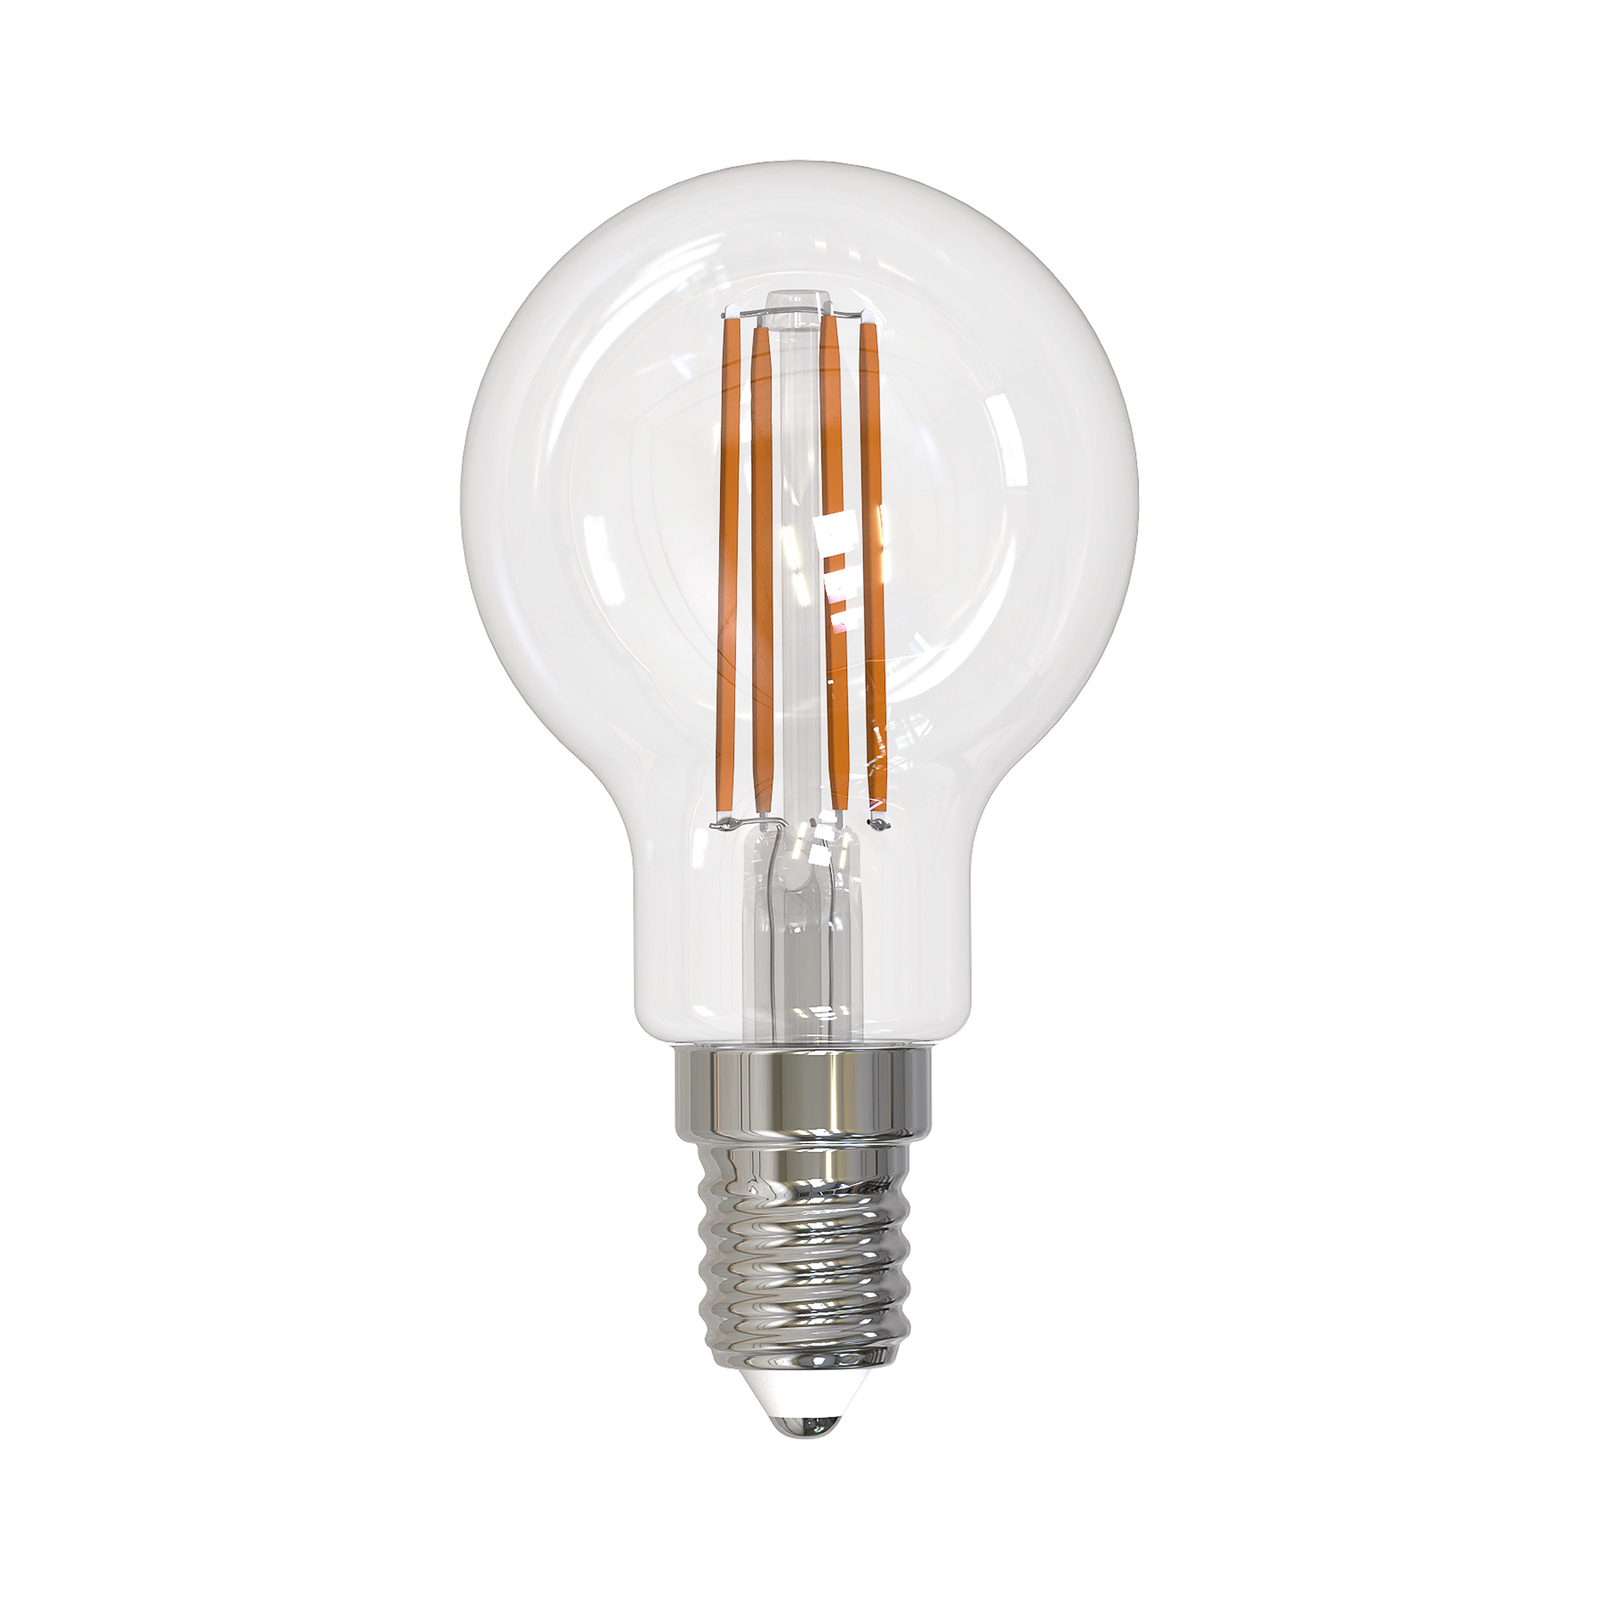 Arcchio bombilla LED con filamento E14 G45, lote de 10, 4000 K